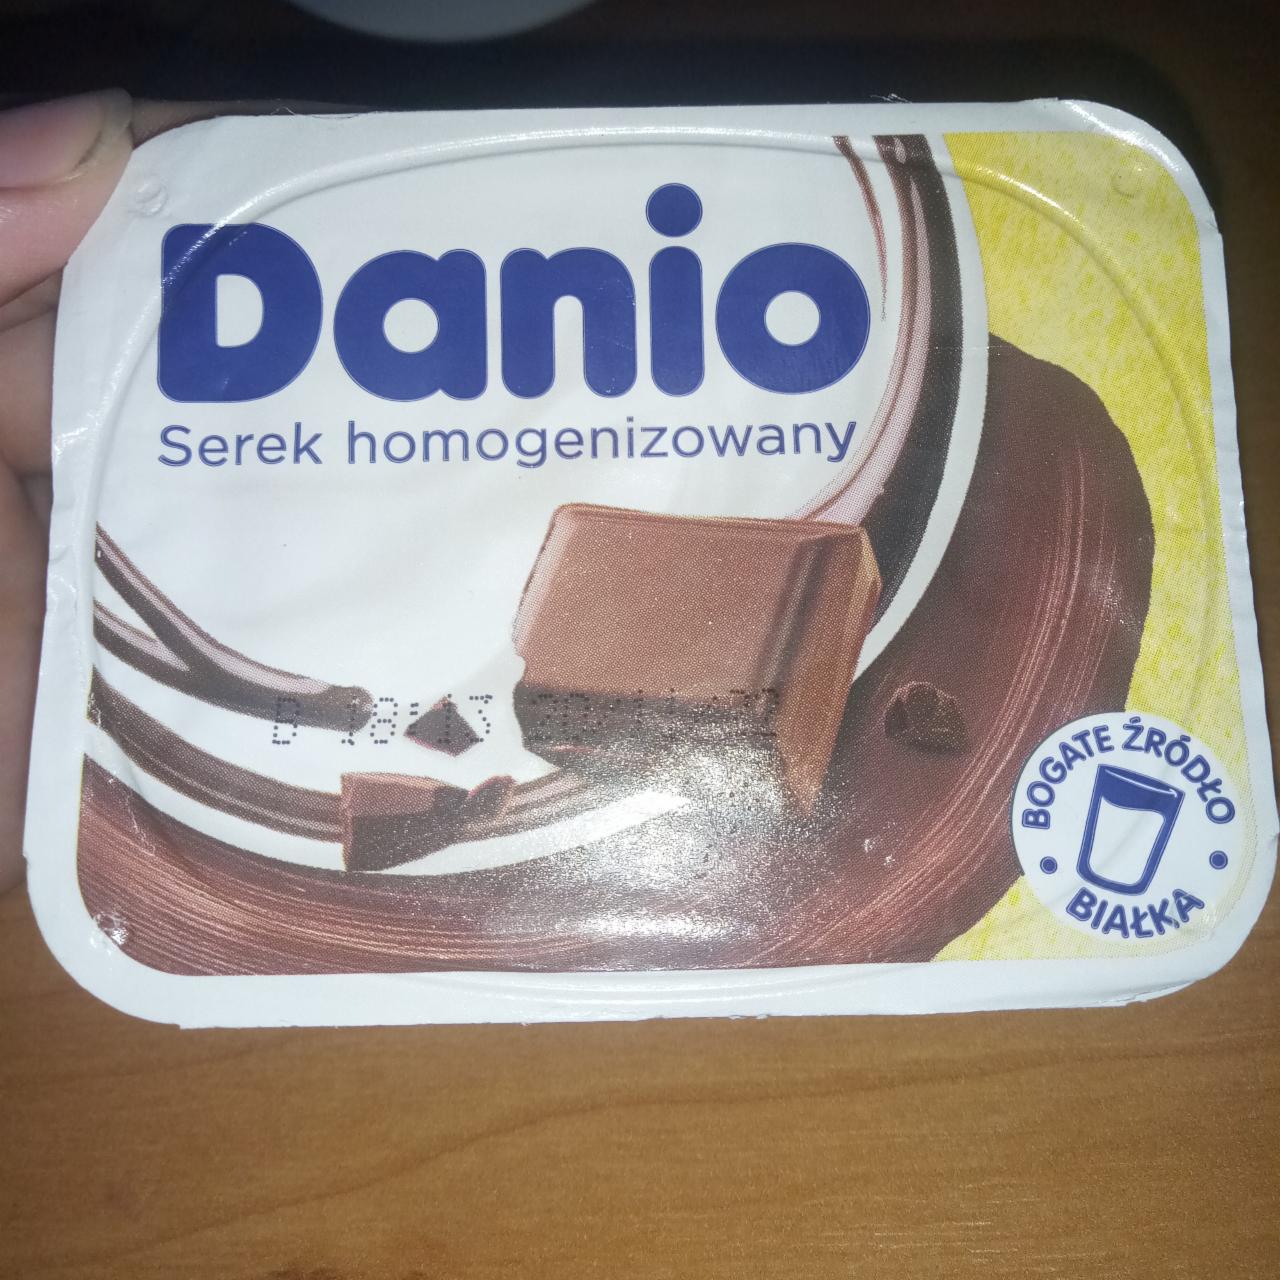 Zdjęcia - Danio Serek homogenizowany o smaku czekoladowo-orzechowym 130 g